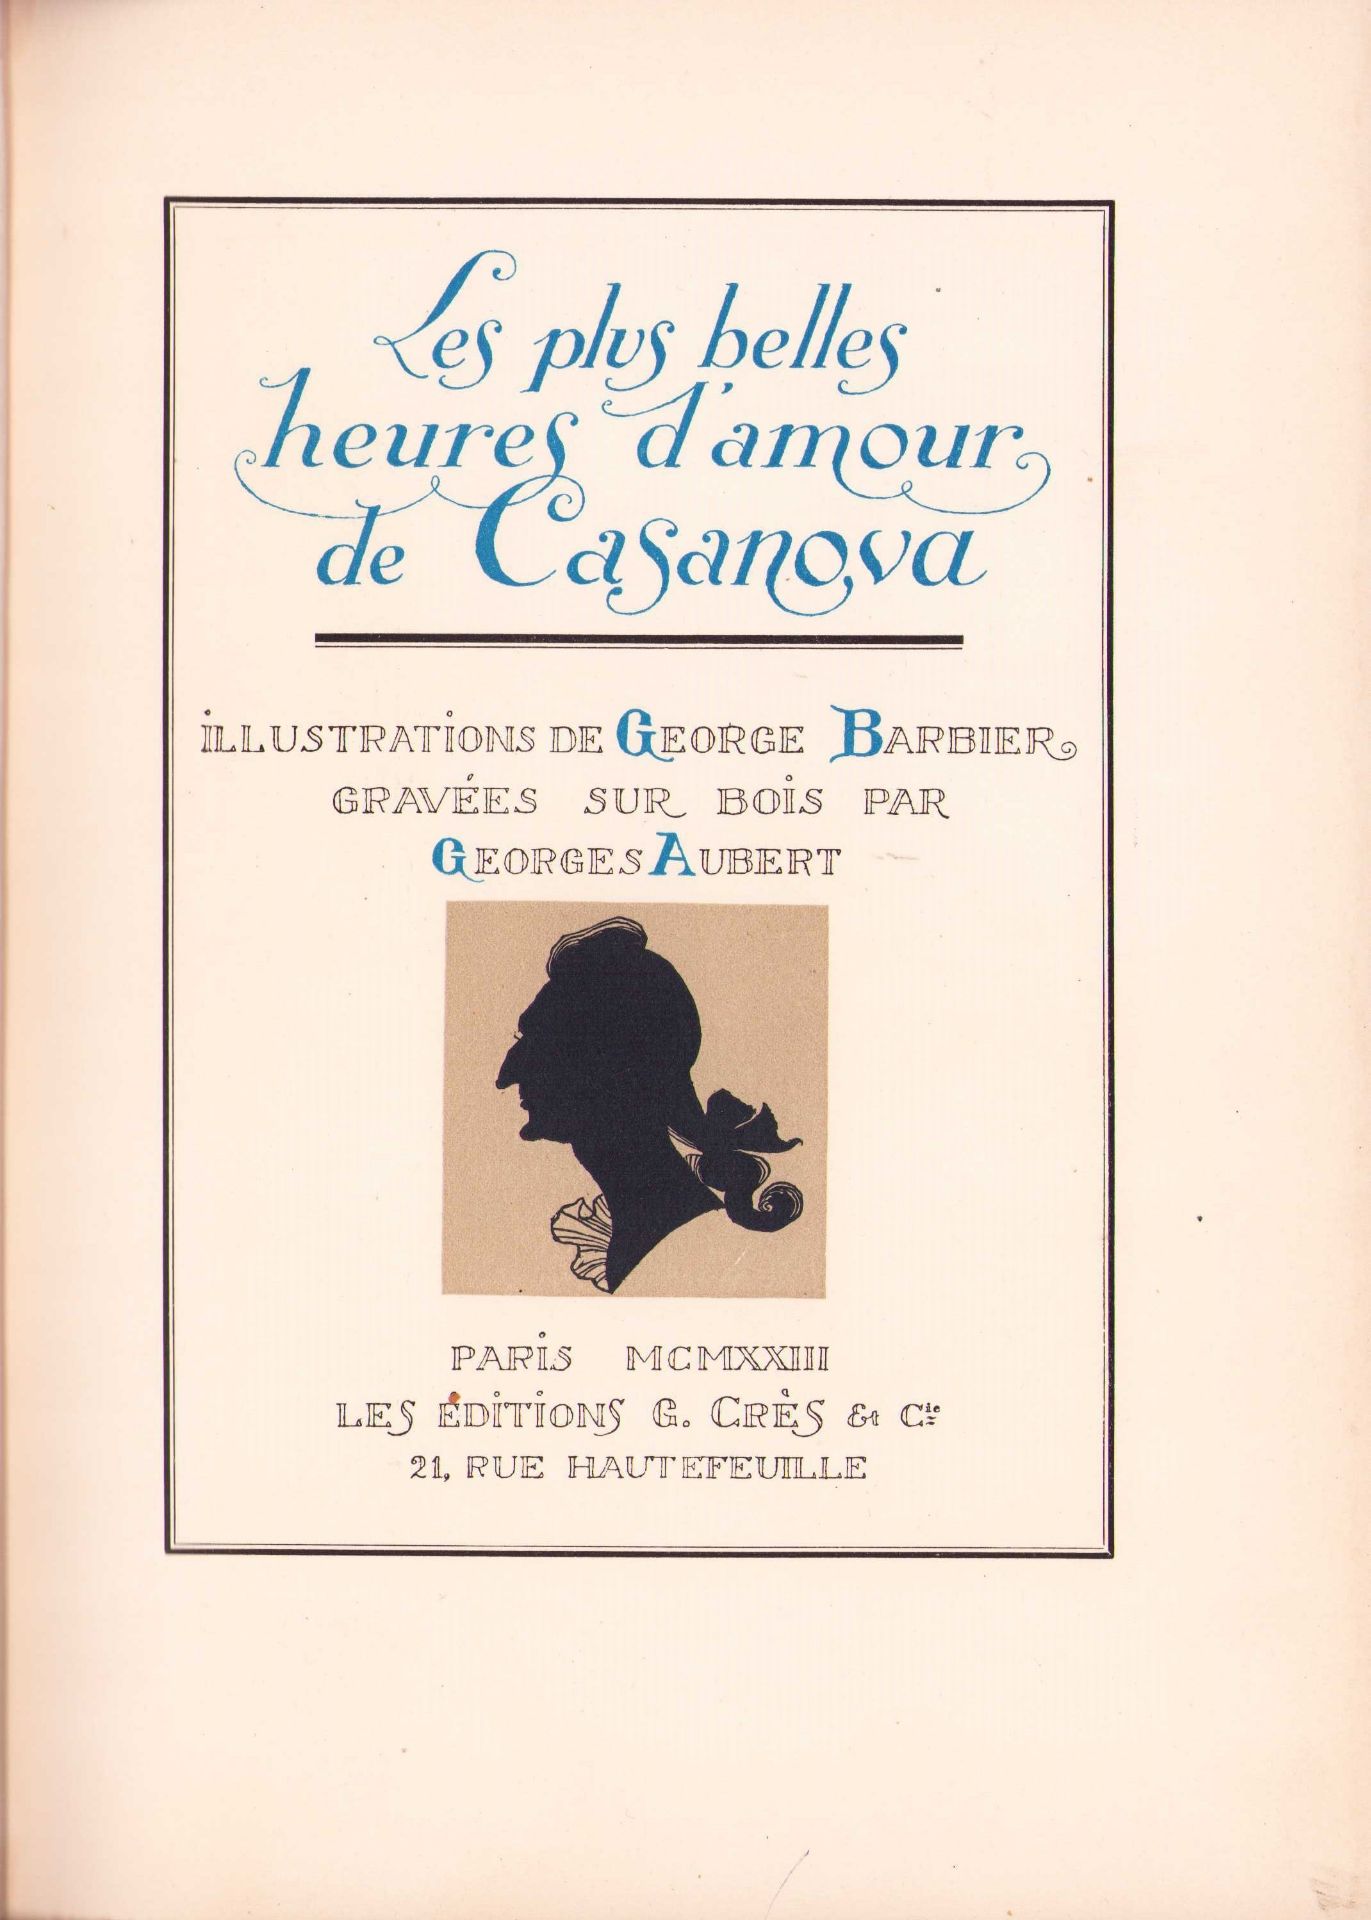 |Illustré| Barbier George,"Les plus belles heures d'amour de Casanova",  1923 - Image 5 of 13